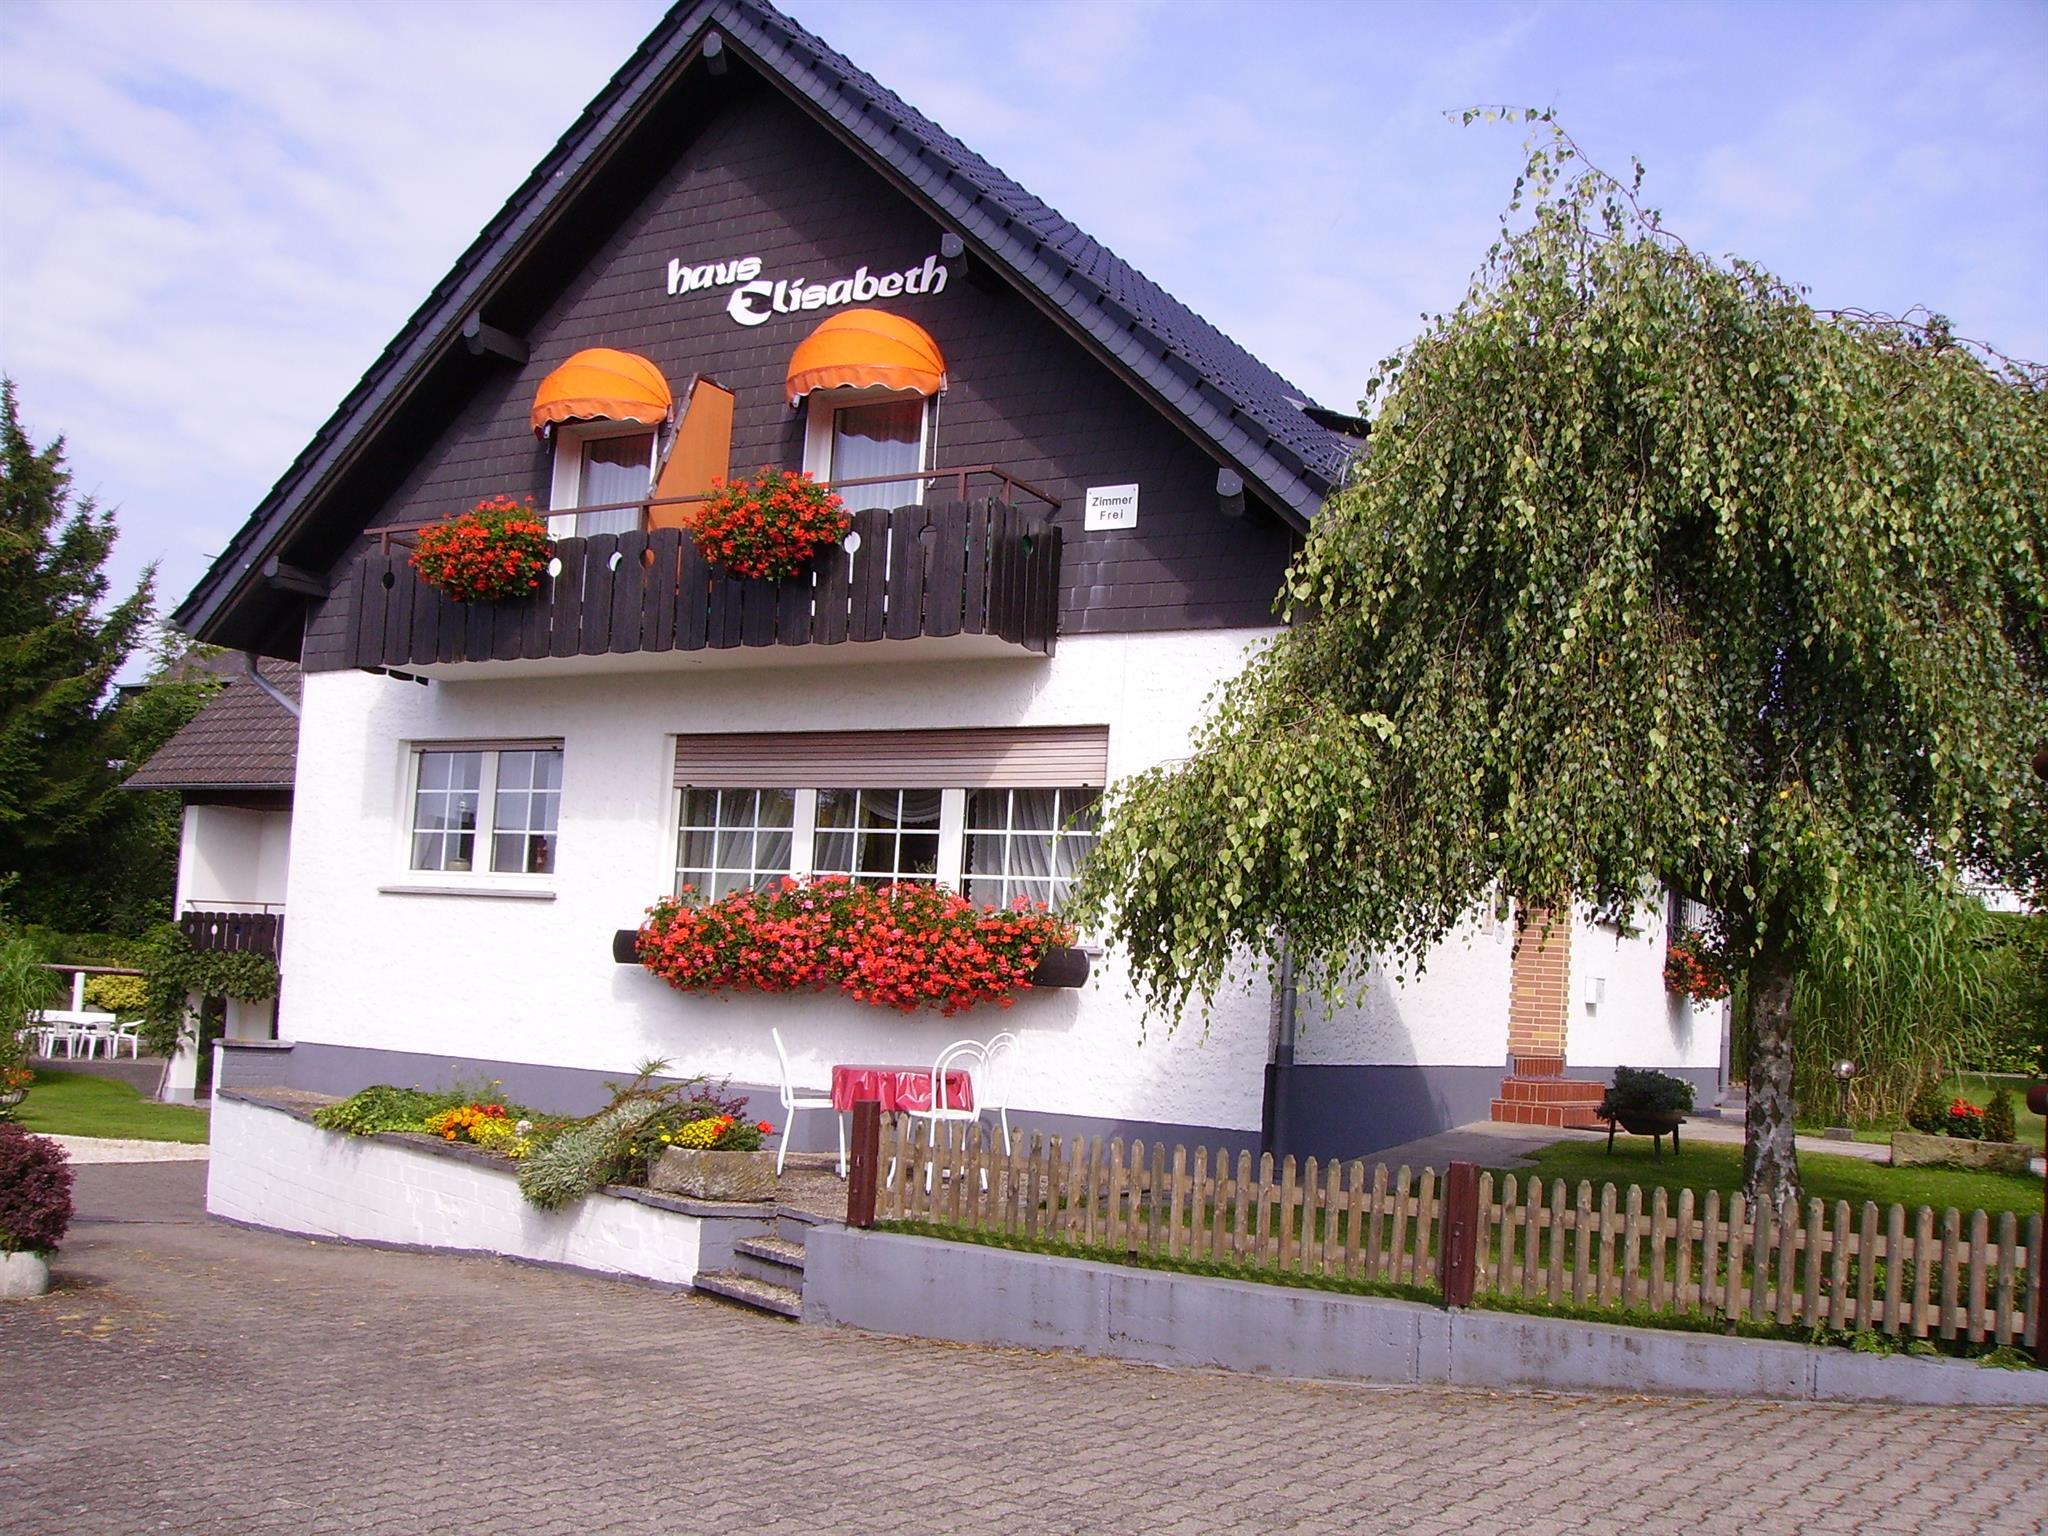 Haus Elisabeth 2-Bettwohnung - No. II - Ferienwohnung in der Eifel